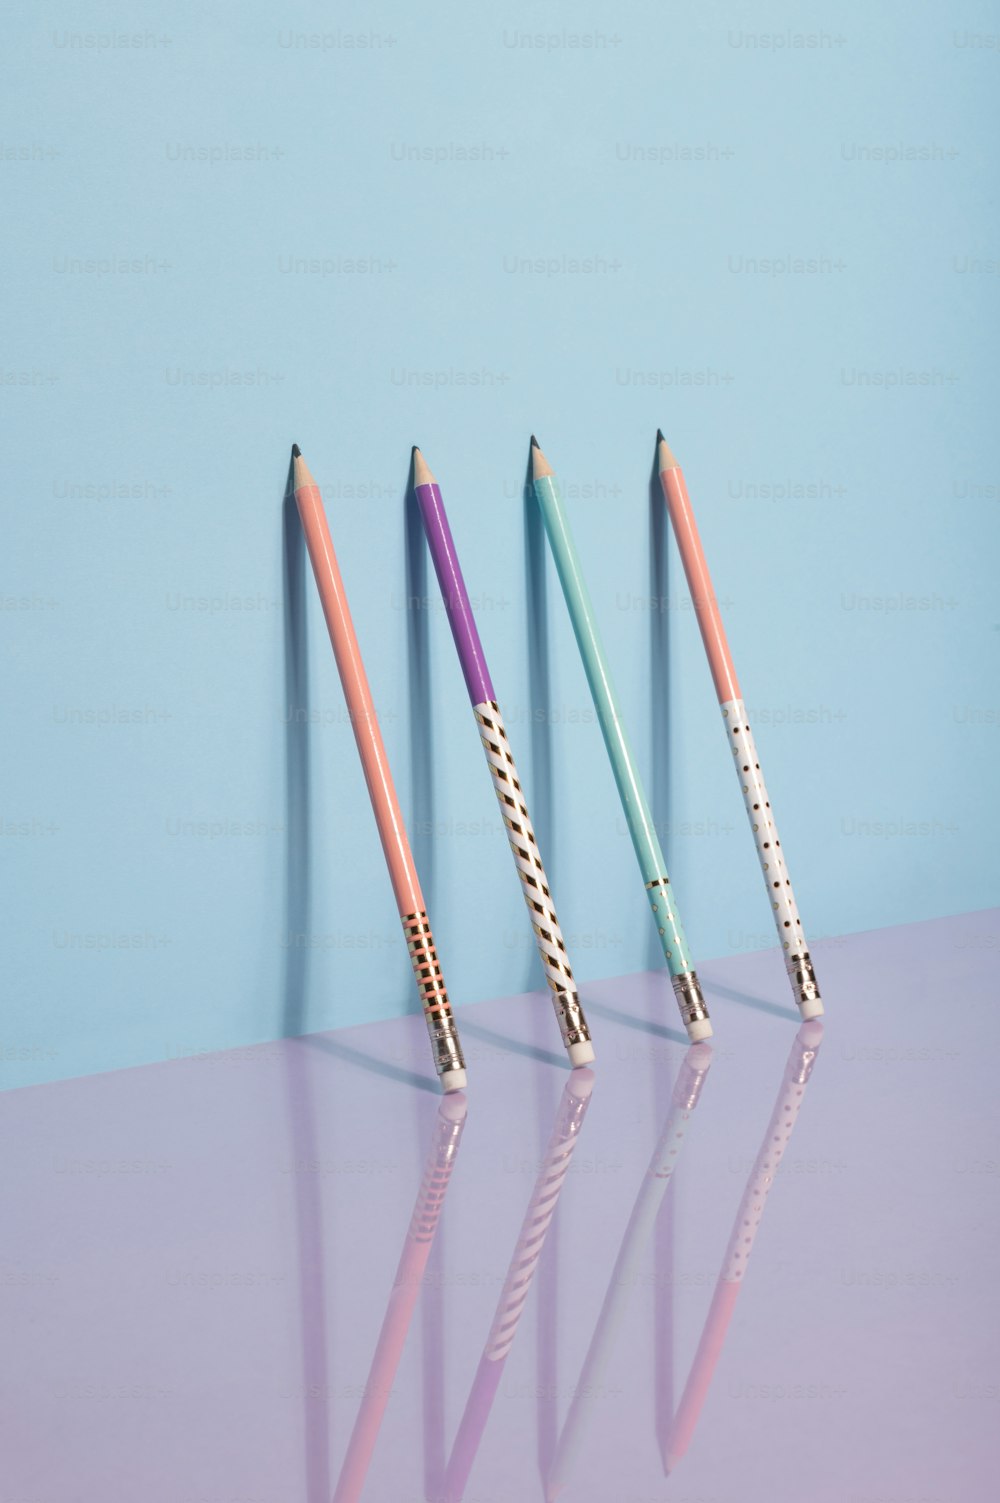 Tre matite colorate diverse sono allineate in fila